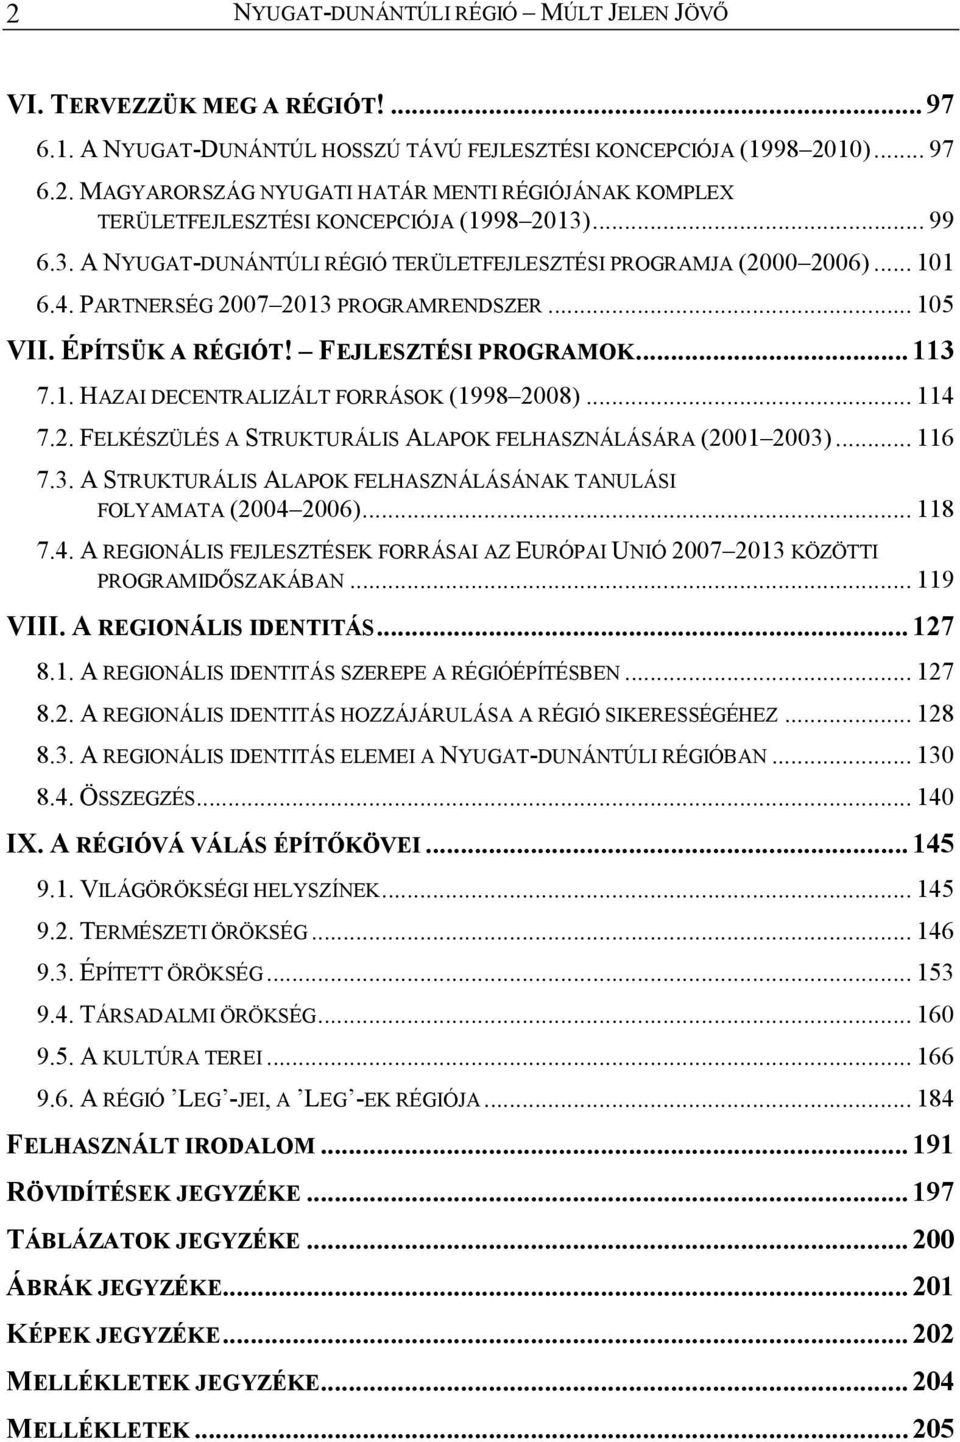 .. 114 7.2. FELKÉSZÜLÉS A STRUKTURÁLIS ALAPOK FELHASZNÁLÁSÁRA (2001 2003)... 116 7.3. A STRUKTURÁLIS ALAPOK FELHASZNÁLÁSÁNAK TANULÁSI FOLYAMATA (2004 2006)... 118 7.4. A REGIONÁLIS FEJLESZTÉSEK FORRÁSAI AZ EURÓPAI UNIÓ 2007 2013 KÖZÖTTI PROGRAMIDİSZAKÁBAN.